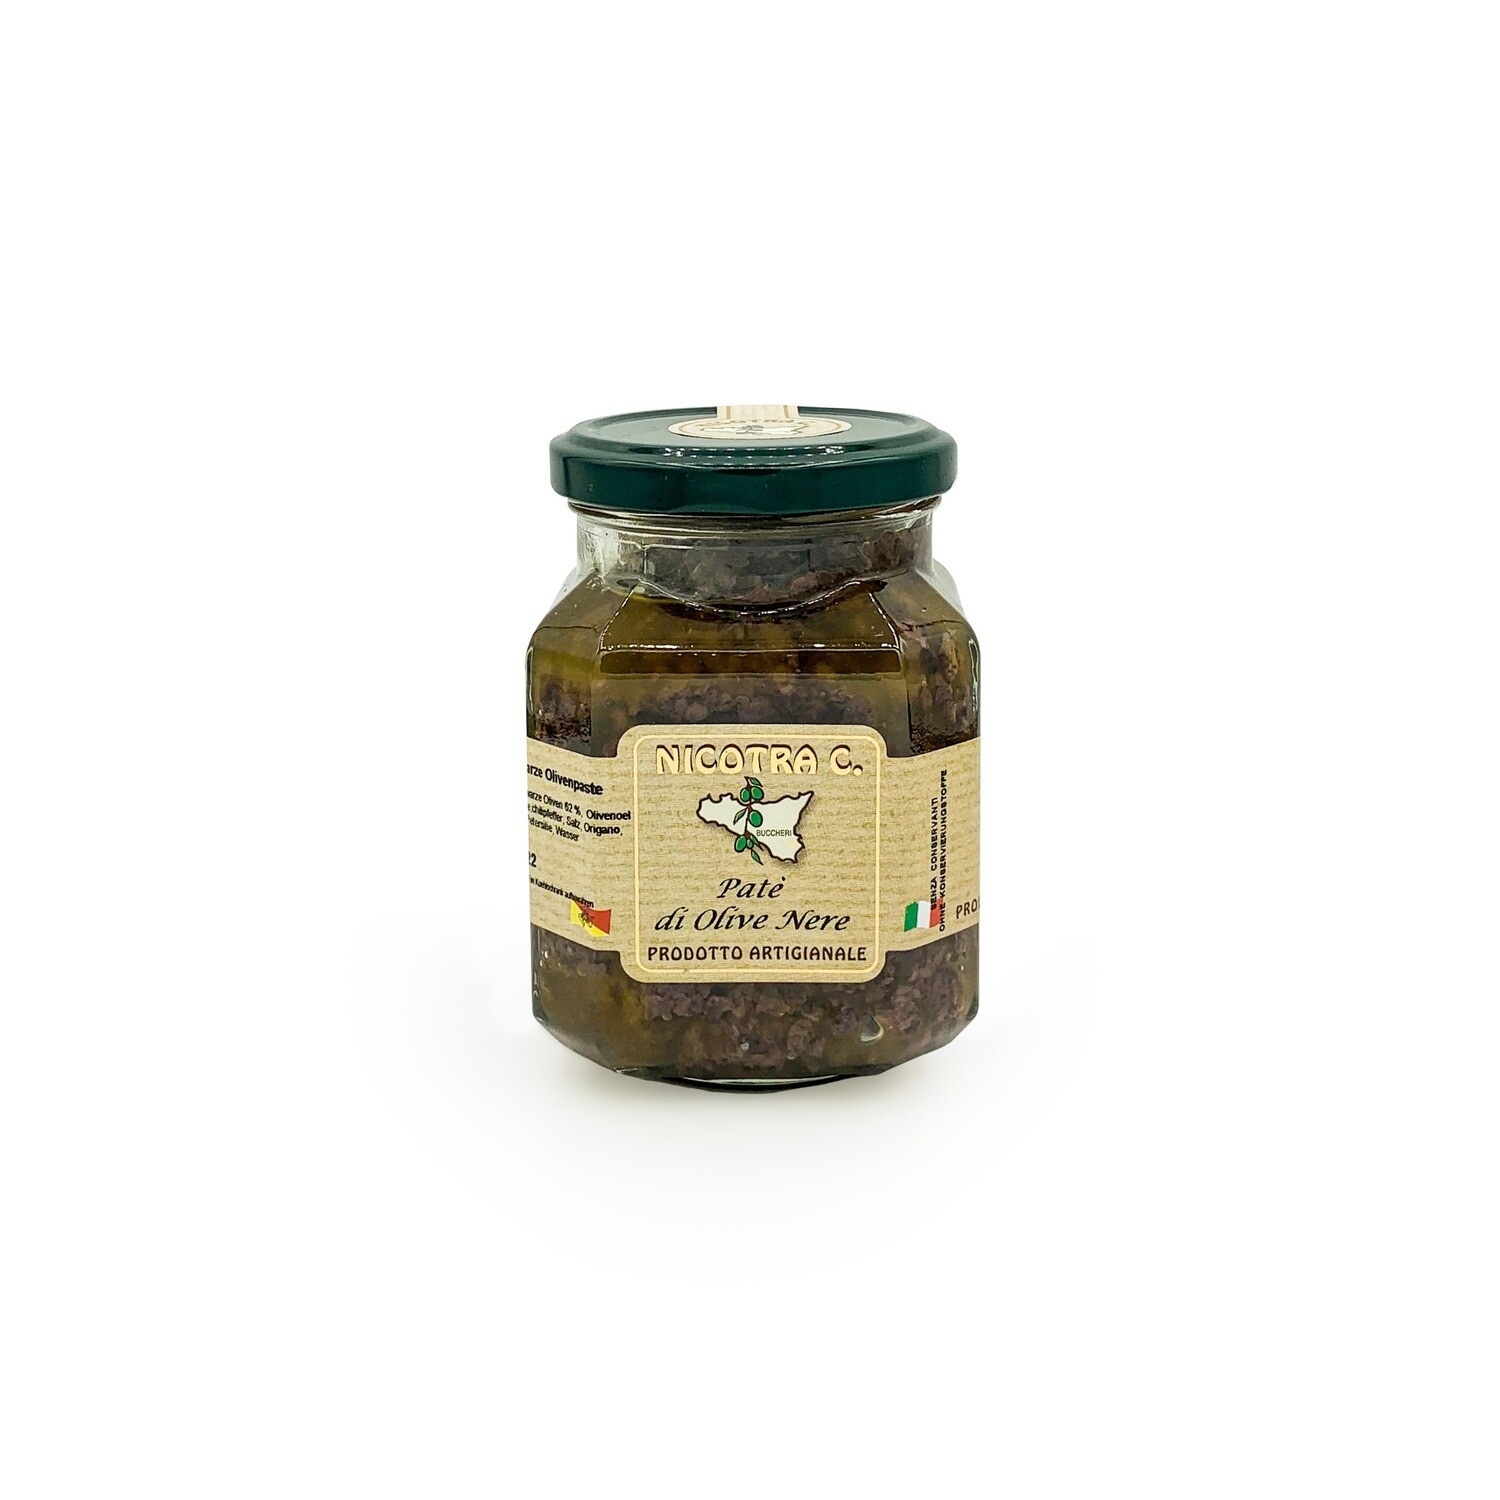 Musta oliivitahna, Paté di Olive Nere, 275 g